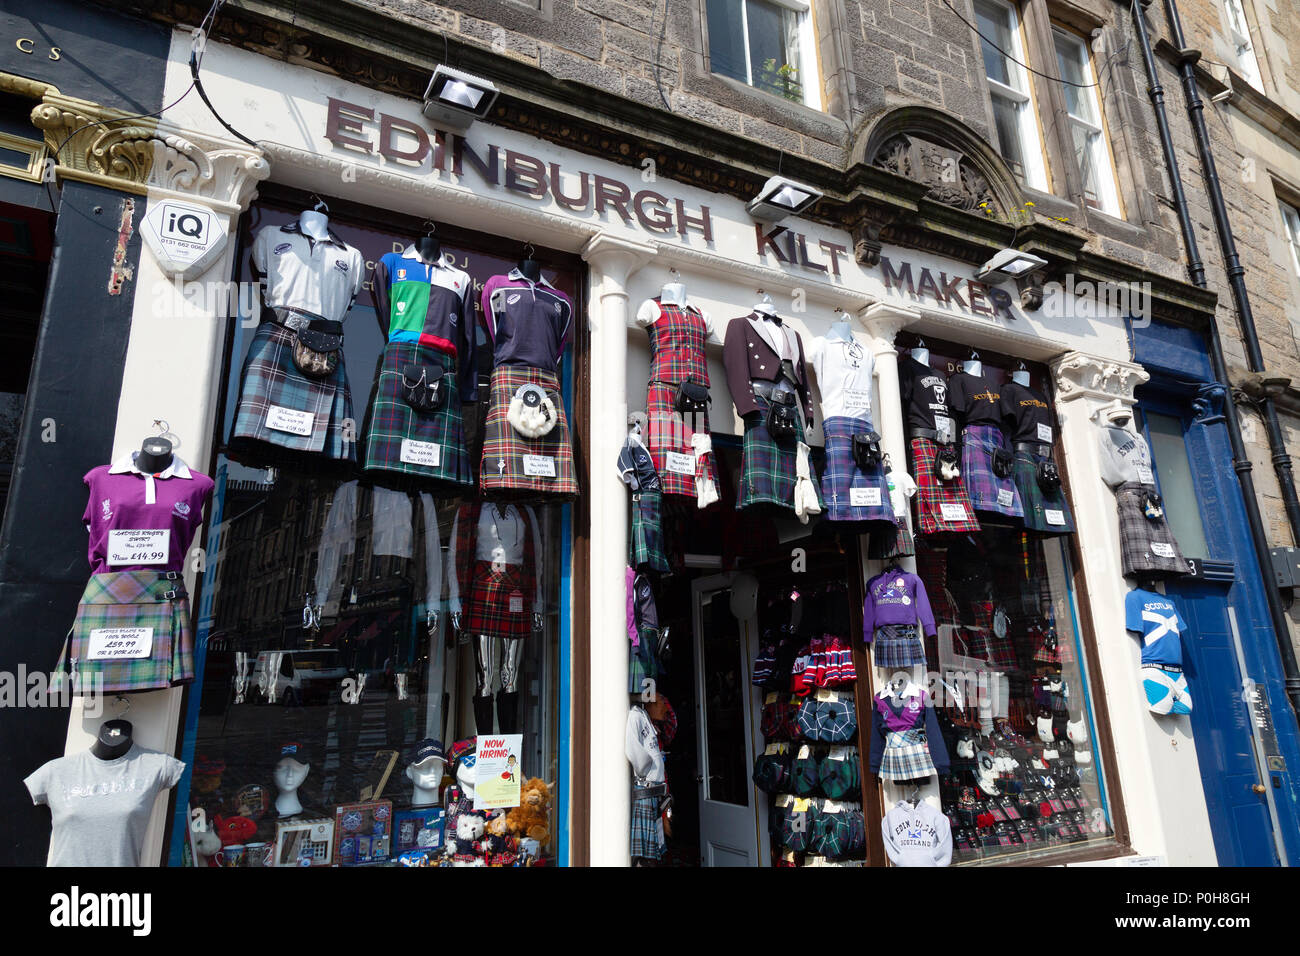 Kilt écossais décideurs boutique vendant des kilts, Grassmarket, Édimbourg, Écosse Vieille Ville UK Europe Banque D'Images